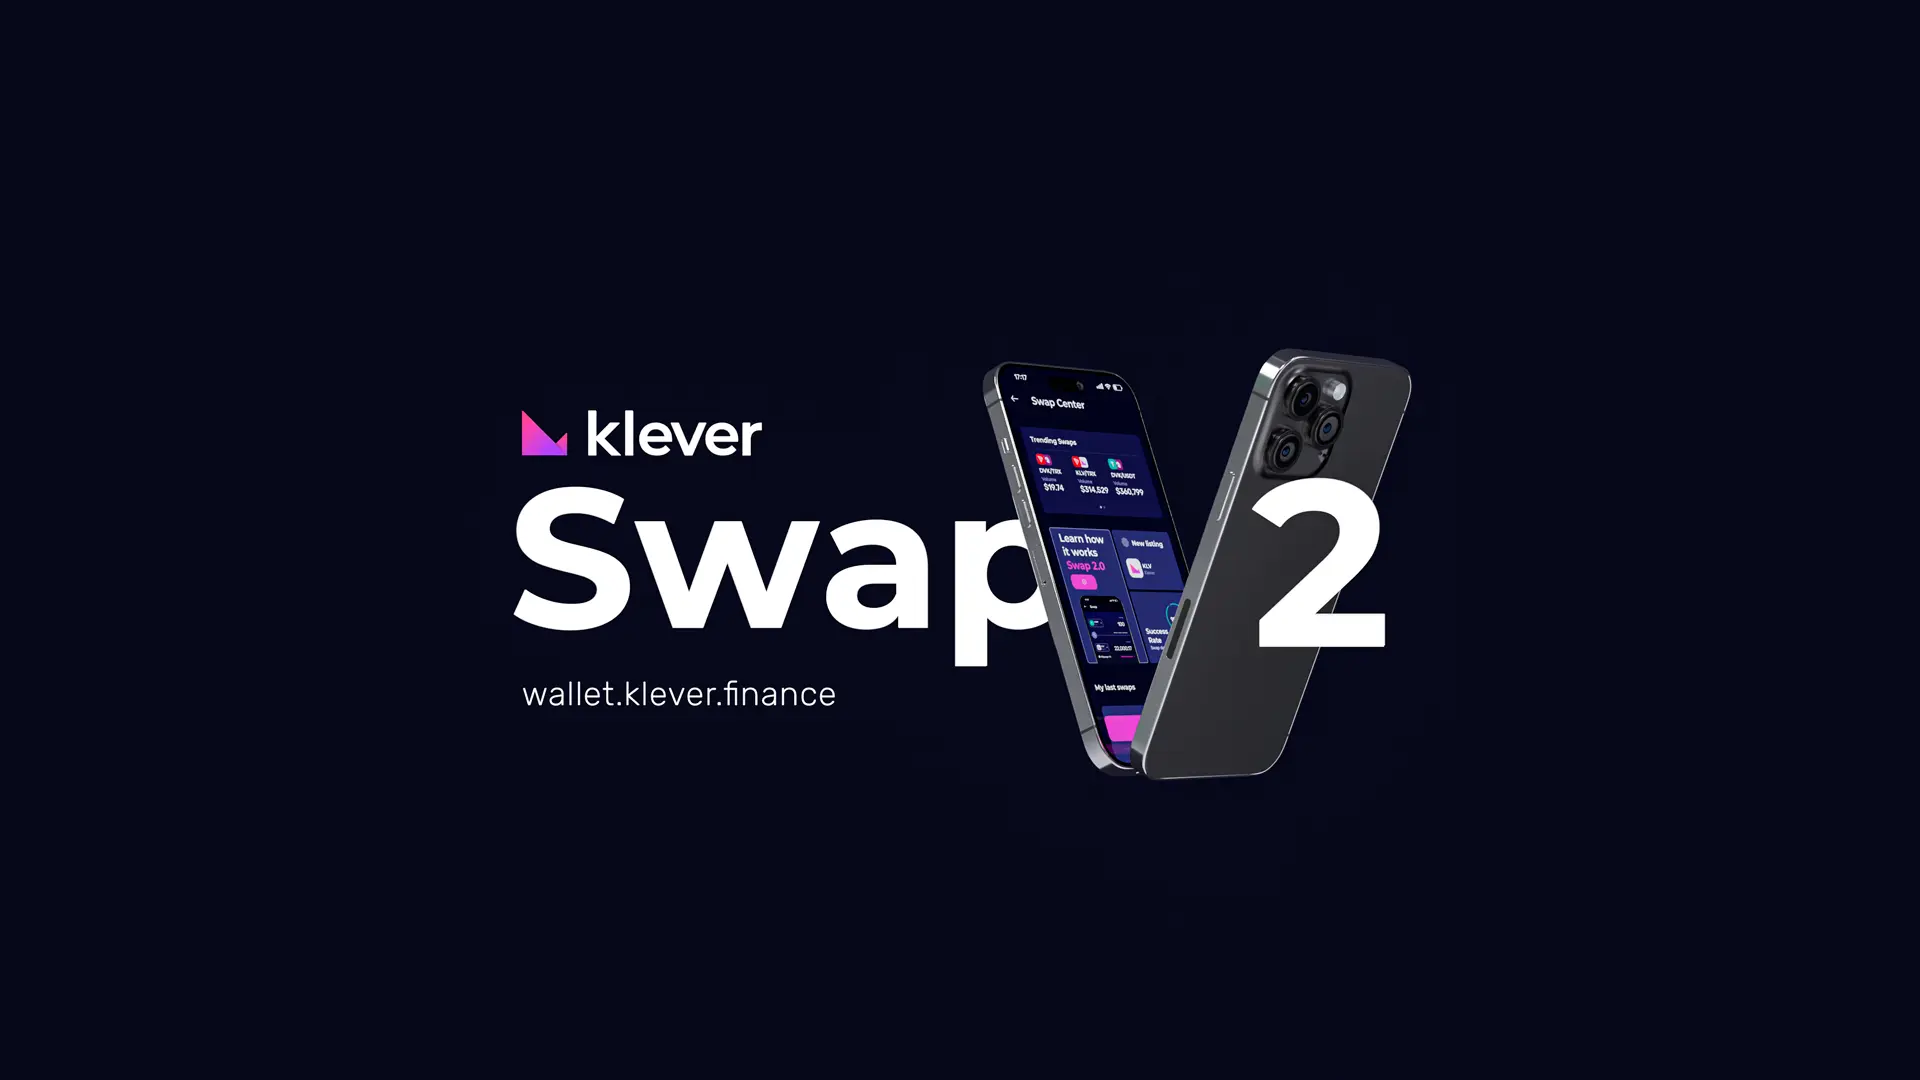 klever swap 2.0